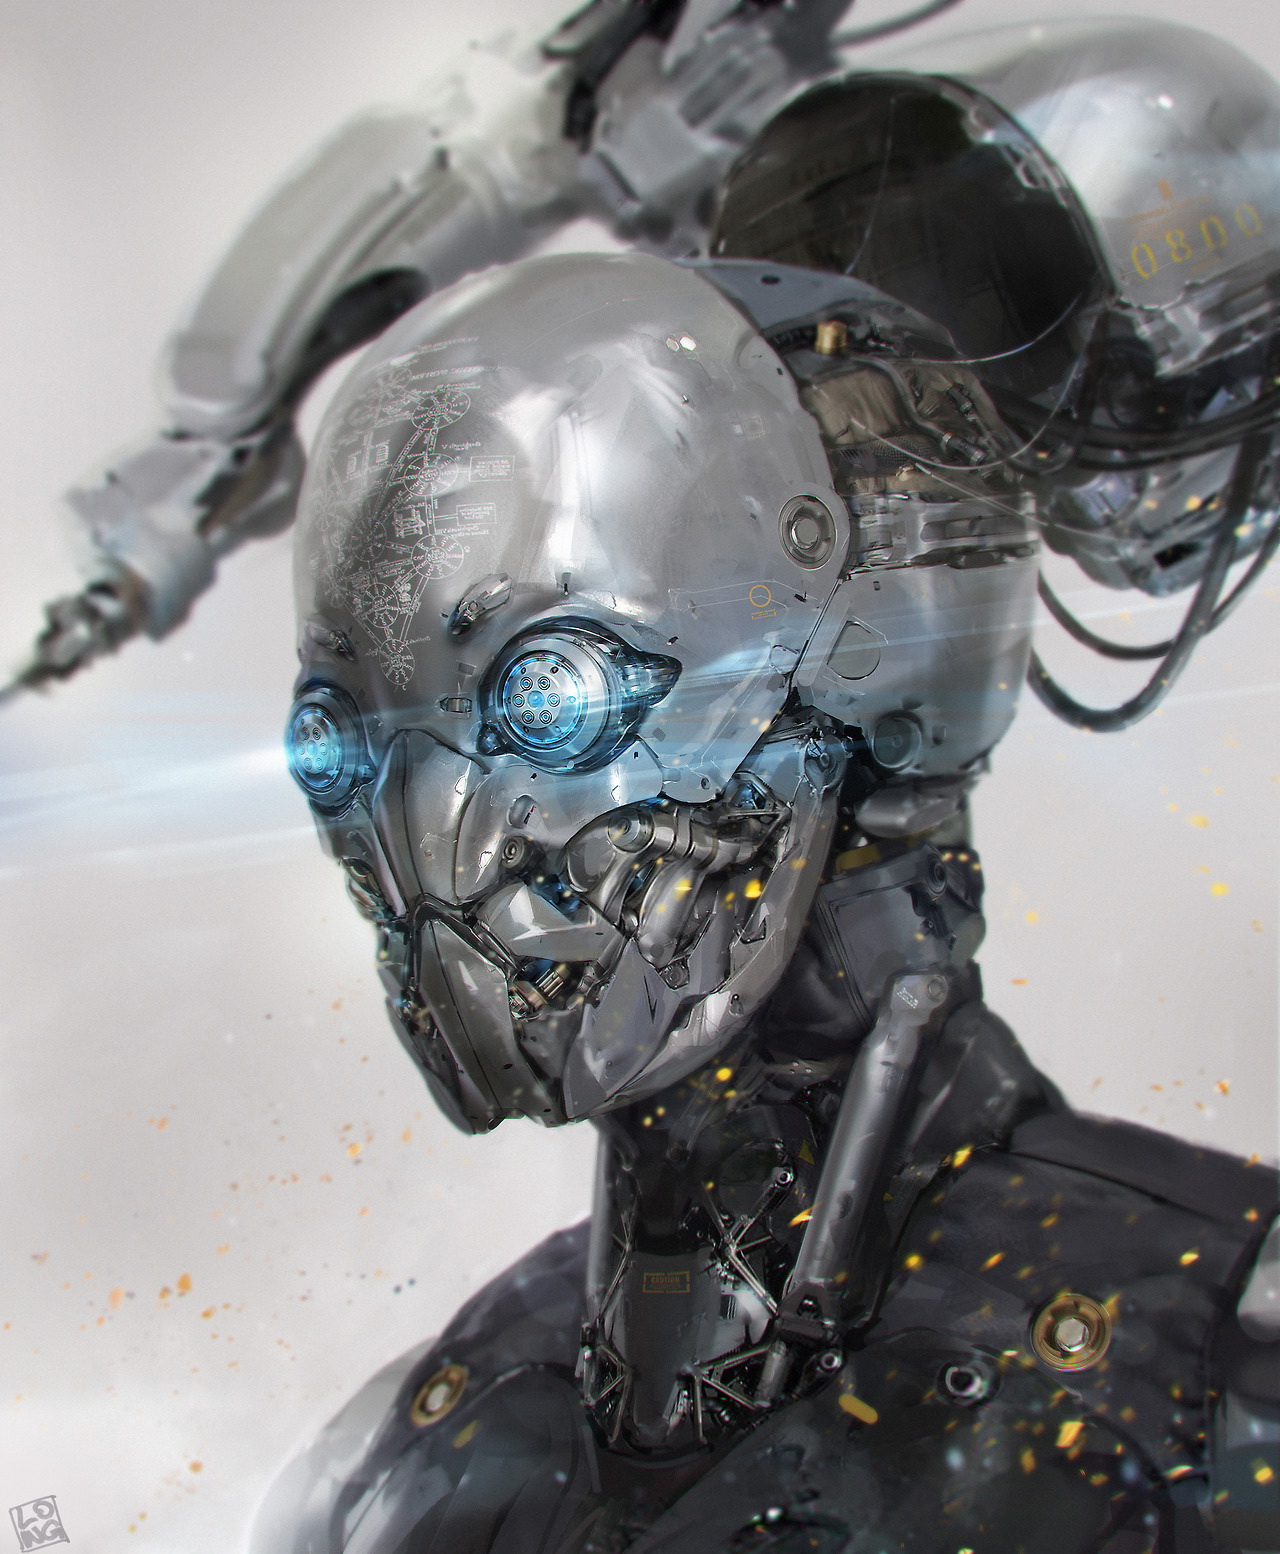 一组科幻机器人与人形机甲的概念设计,是不是酷到没朋友?